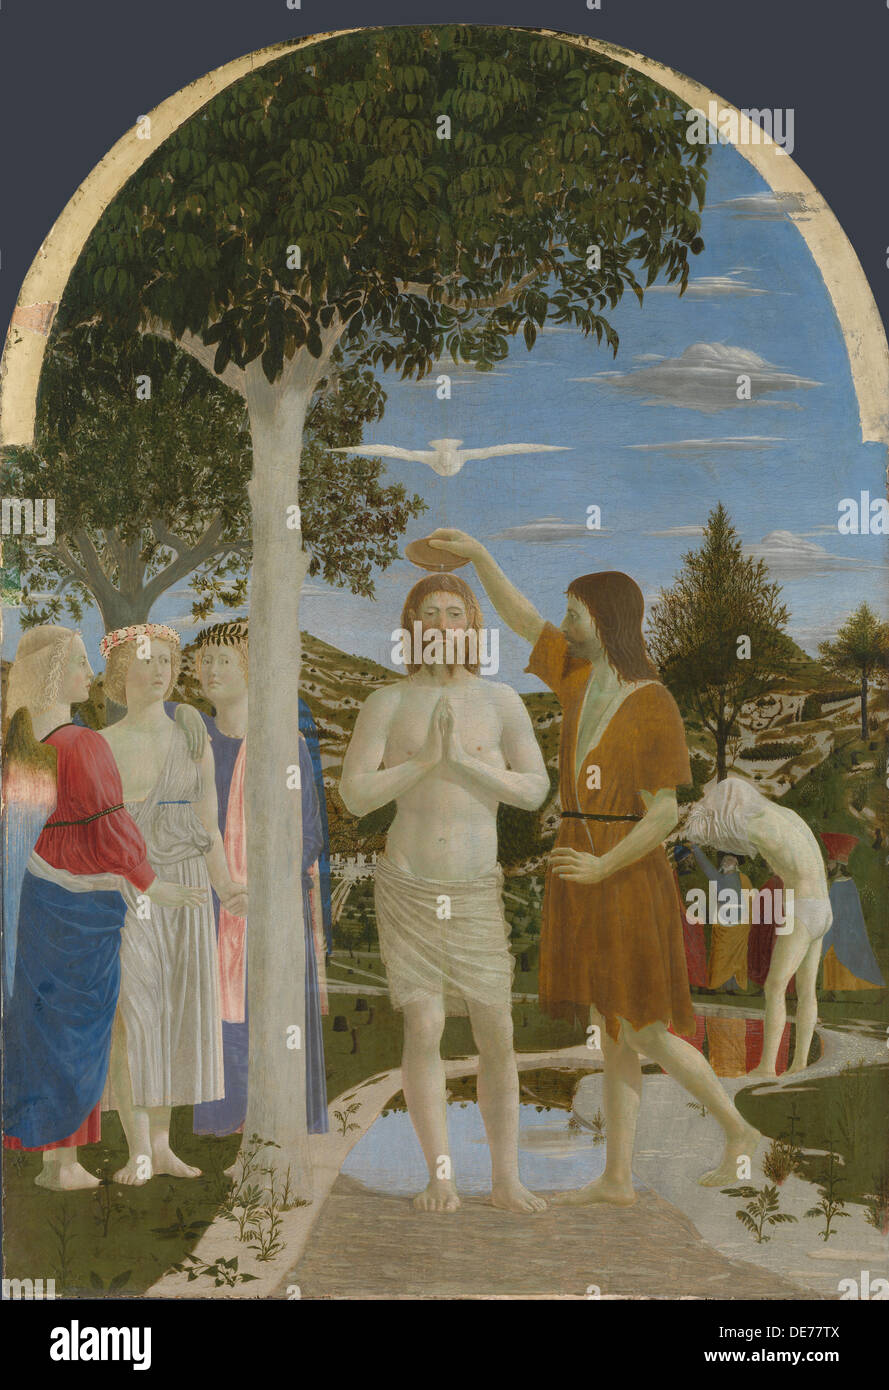 El bautismo de Cristo, 1450s. Artista: Piero della Francesca (ca 1415-1492) Foto de stock